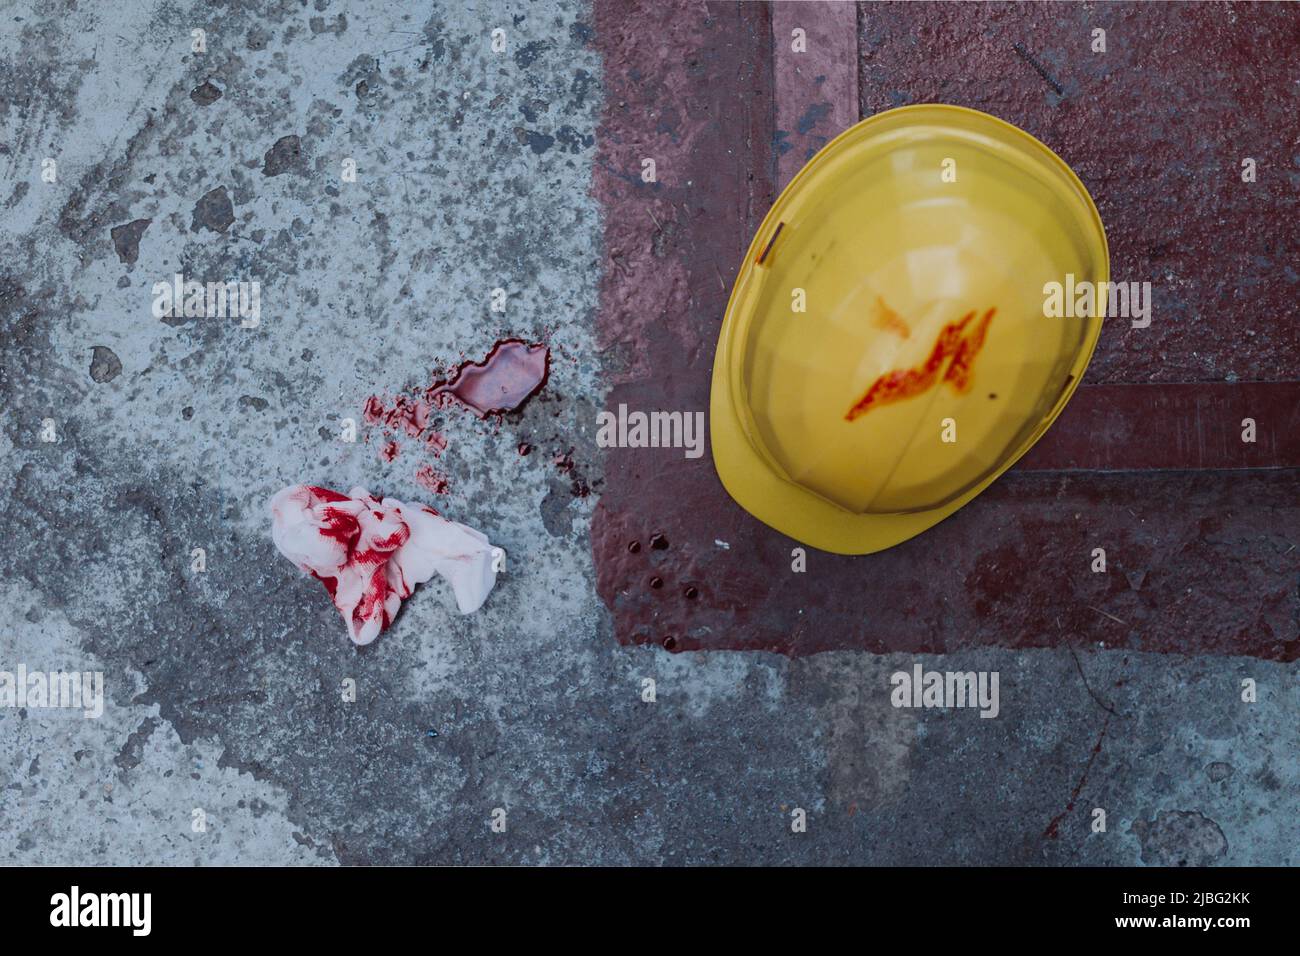 Helm und Gewebe mit Blutflecken und Blut auf dem Boden, Arbeitsunfallconcpet. Stockfoto